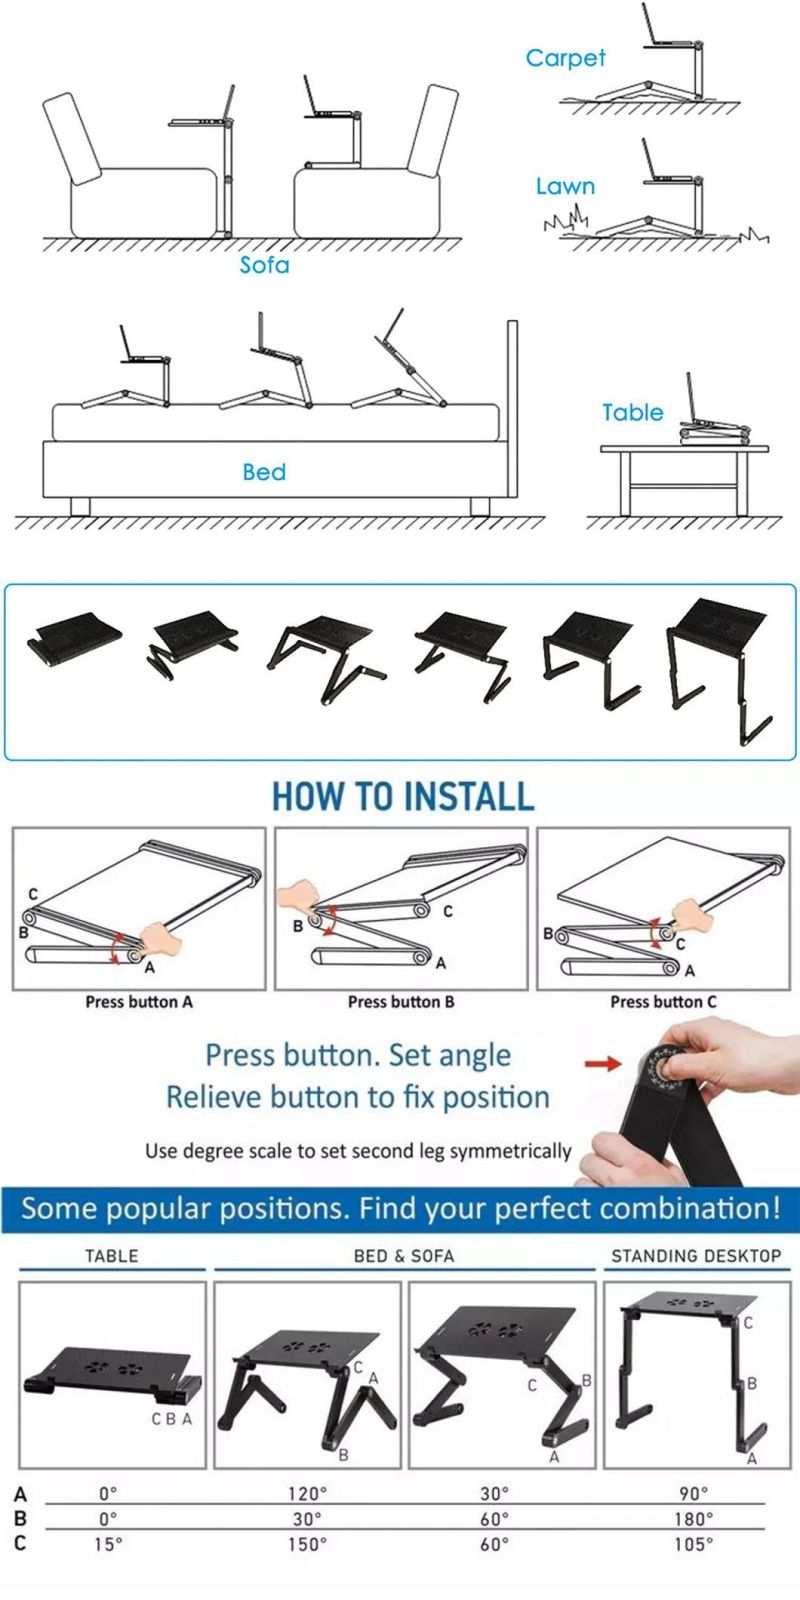 Universal Adjustable Flexible Table Clip Desk Bed Stents Mobile Phone Bracket Stand Holder Gooseneck Phone Holder